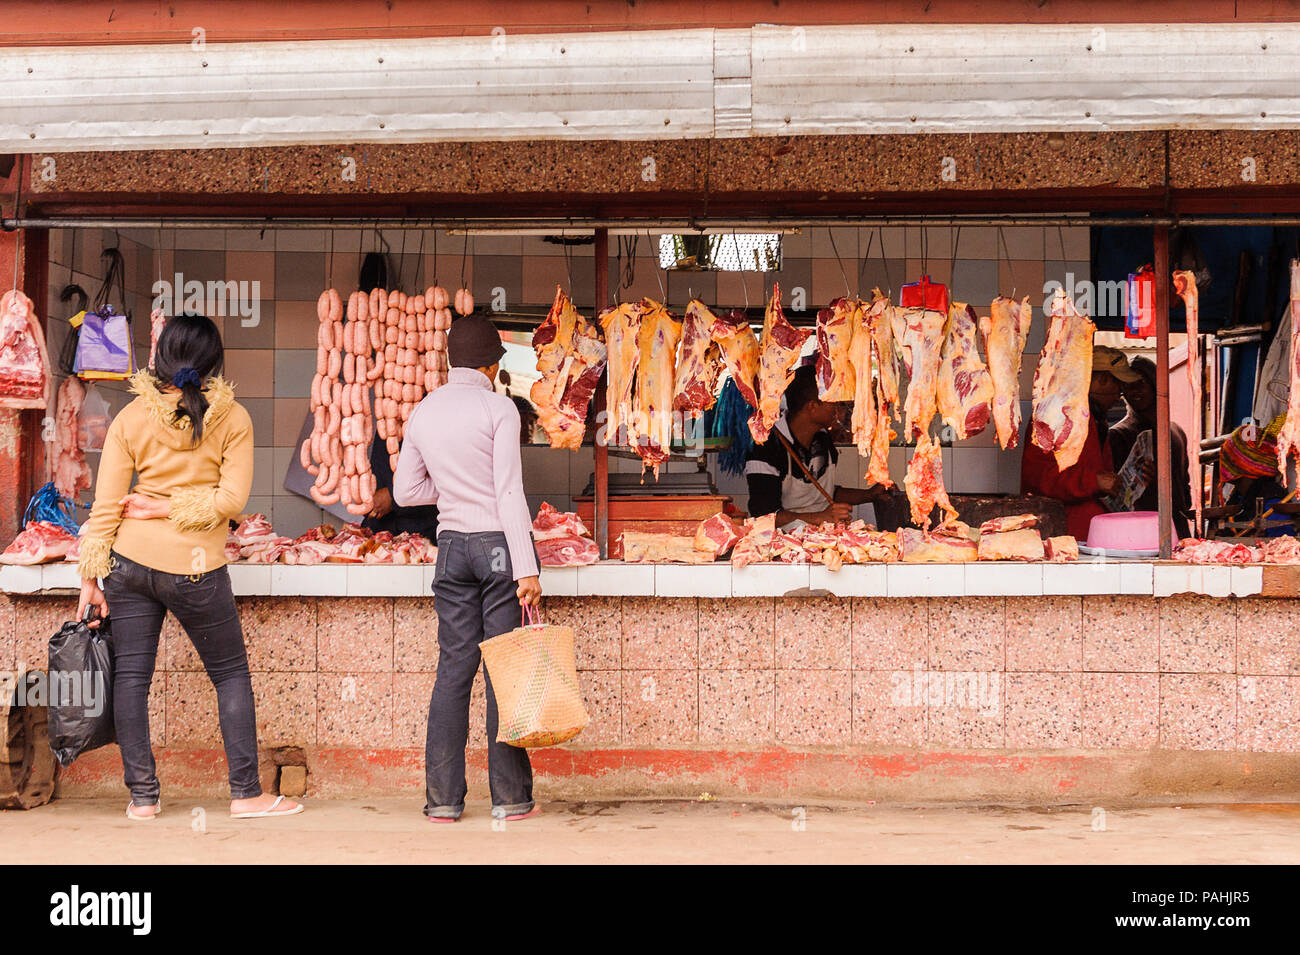 ANTANANARIVO, Madagaskar - 29. JUNI 2011: Unbekannter Madagaskar Mann wählt Fleisch- und Wurstwaren auf dem Markt. Die Menschen leiden an Armut in Madagaskar Stockfoto